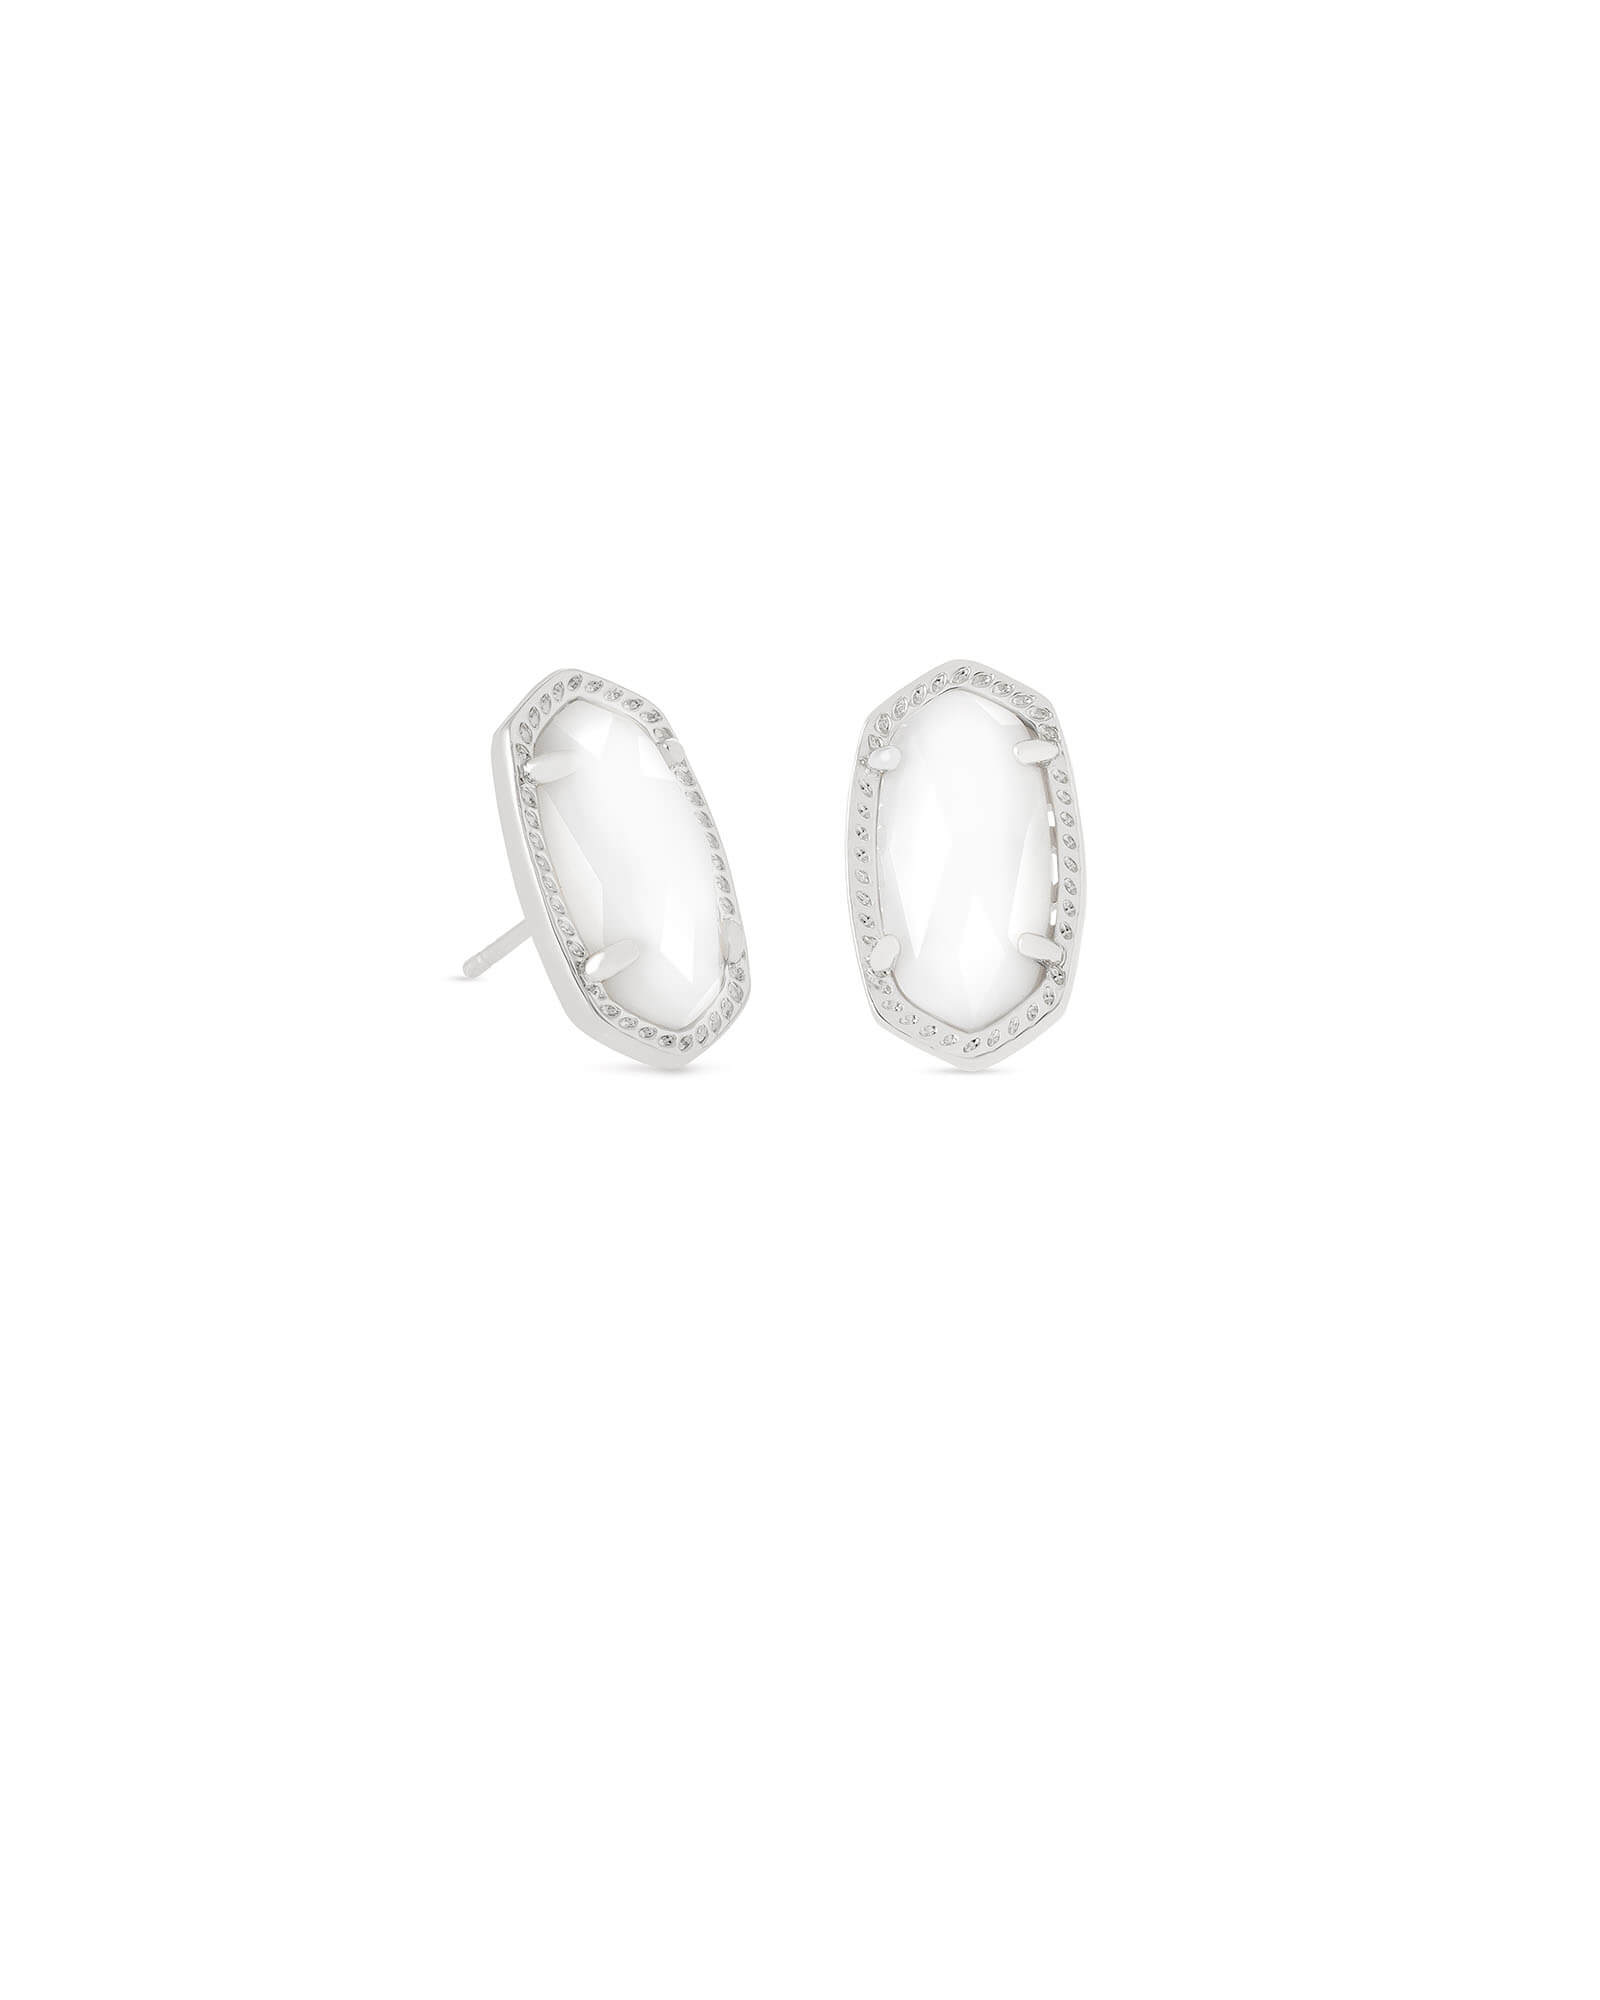 Ellie Silver Stud Earrings in White Pearl | Kendra Scott